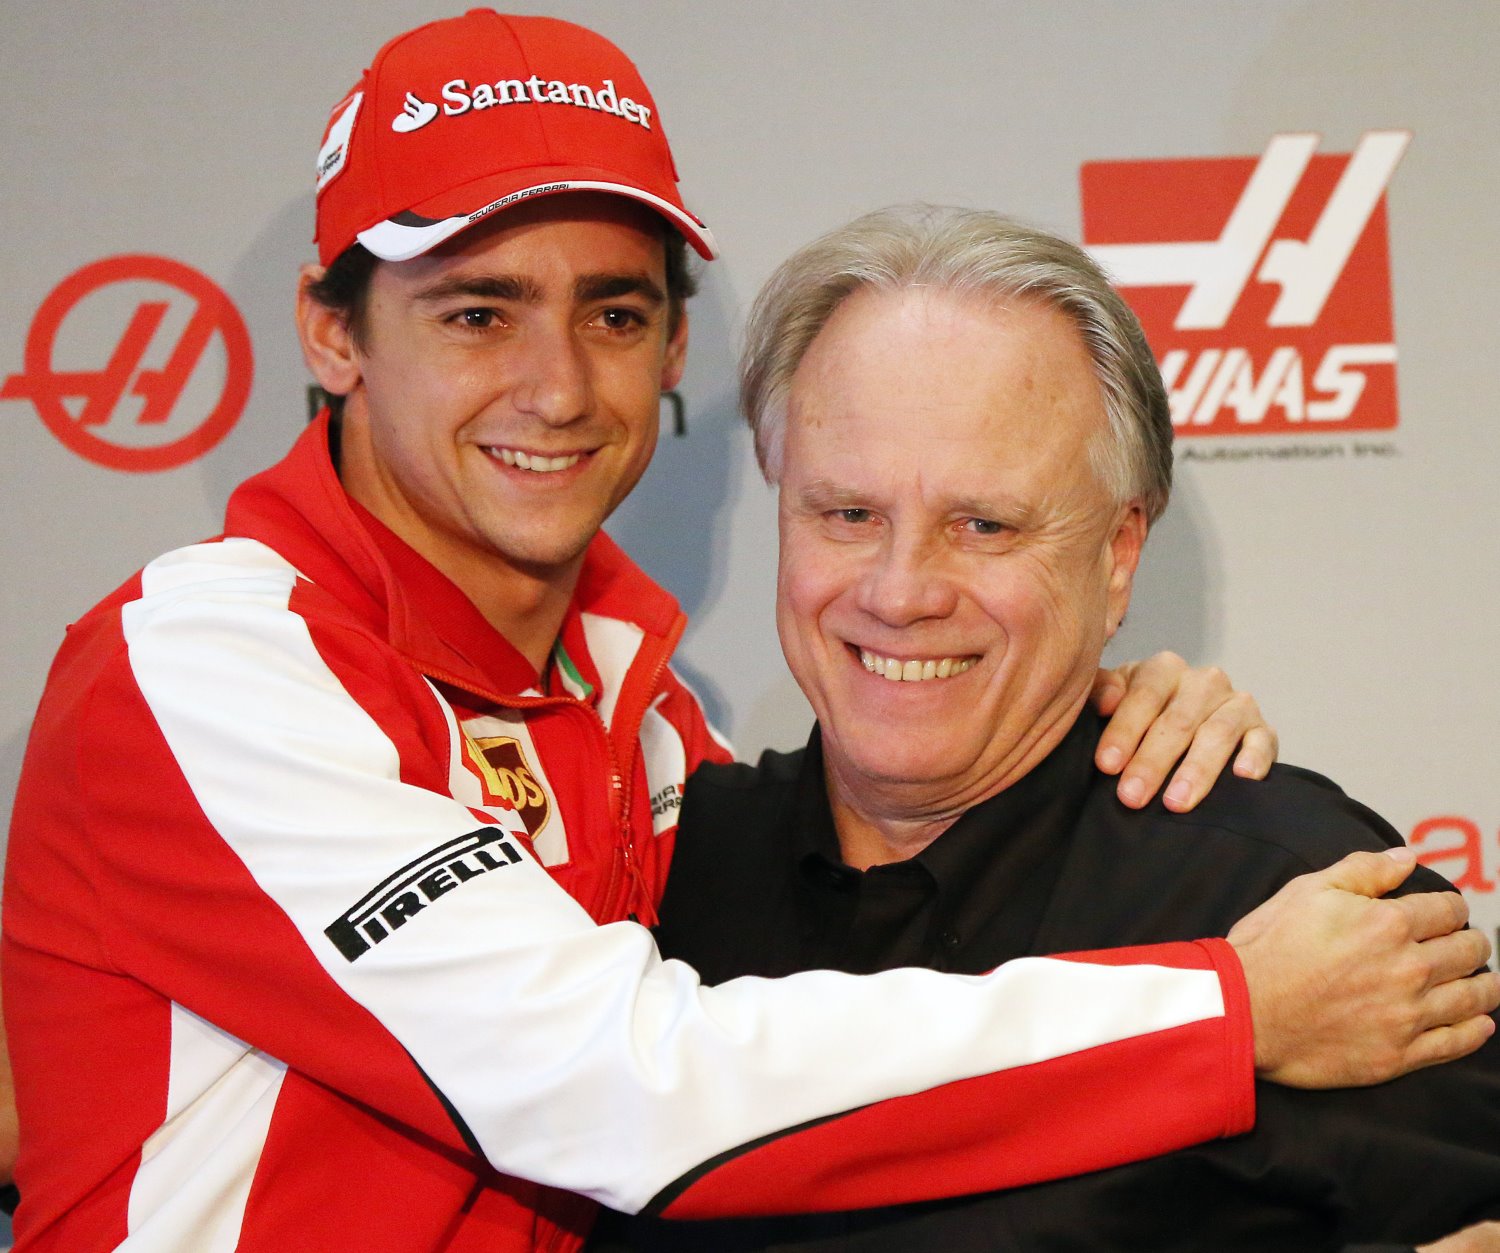 Esteban Gutierrez (L) says Haas (R) wants to score points in Australia